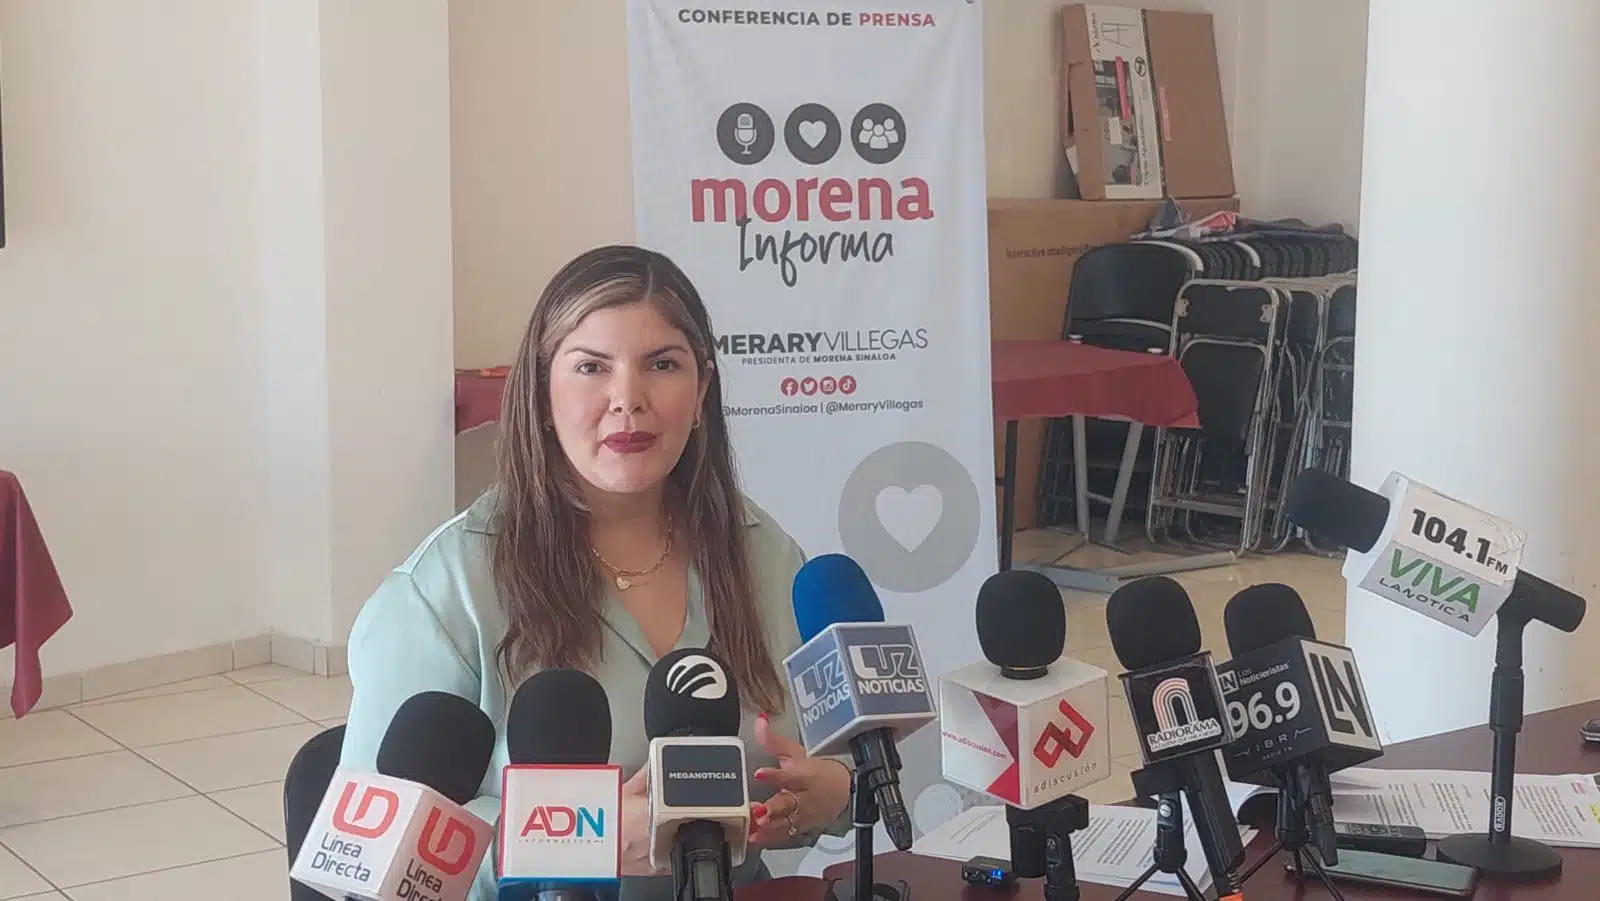 Fernández Noroña podría visitar Sinaloa; Morena podría invitarlo como una “corcholata” rumbo al 2024